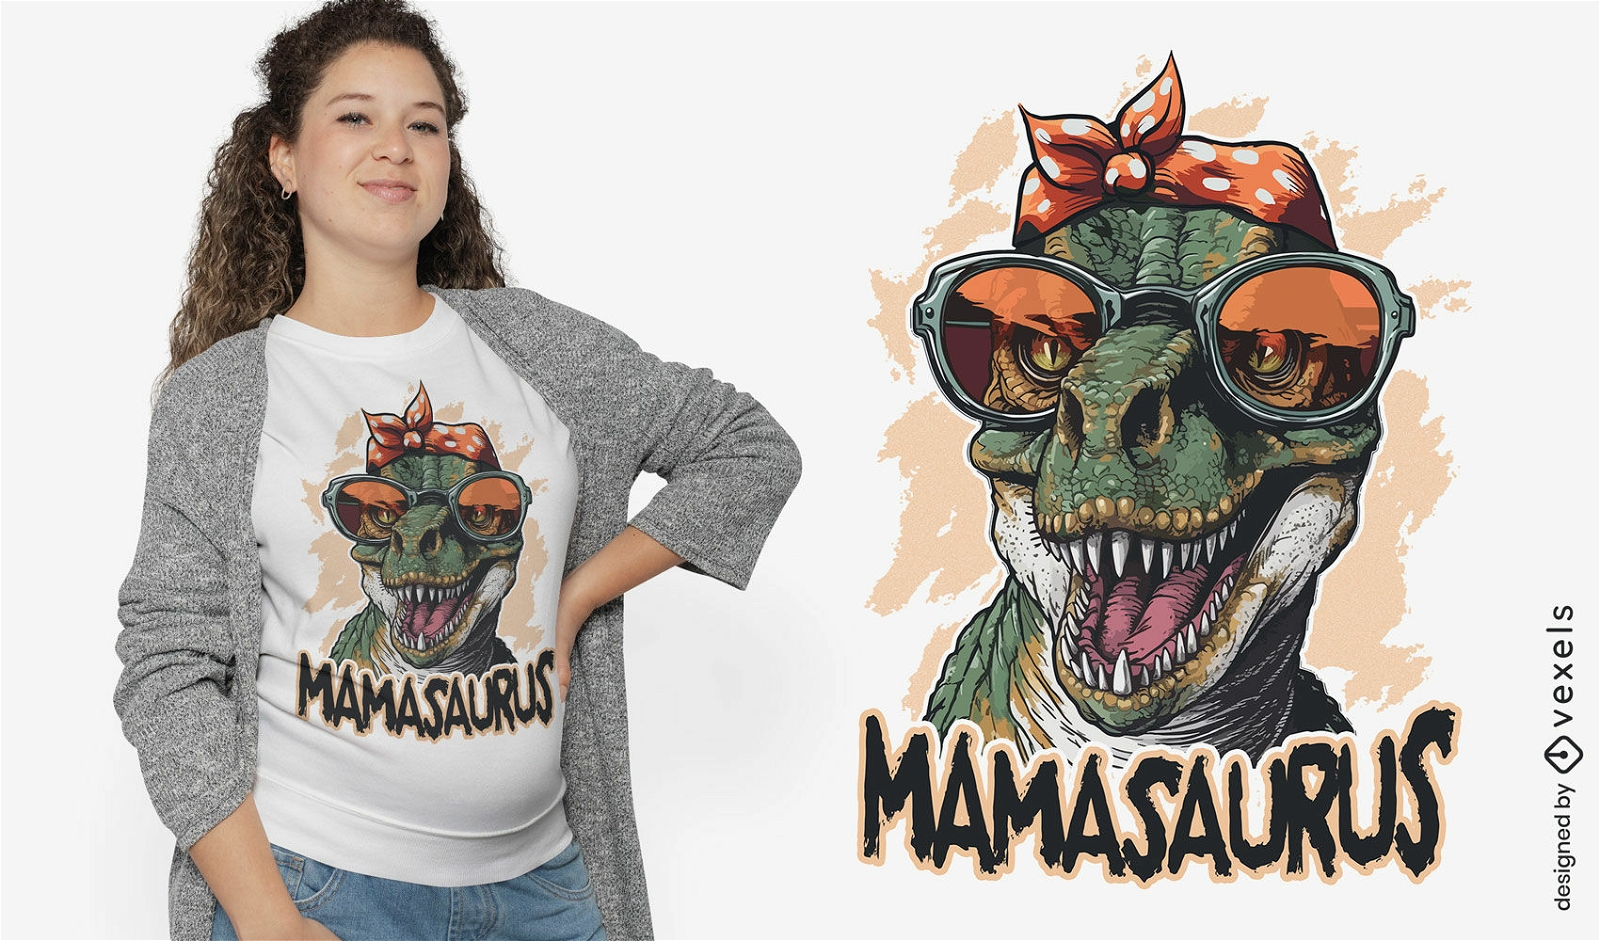 Genial dise?o de camiseta de mamasaurus.